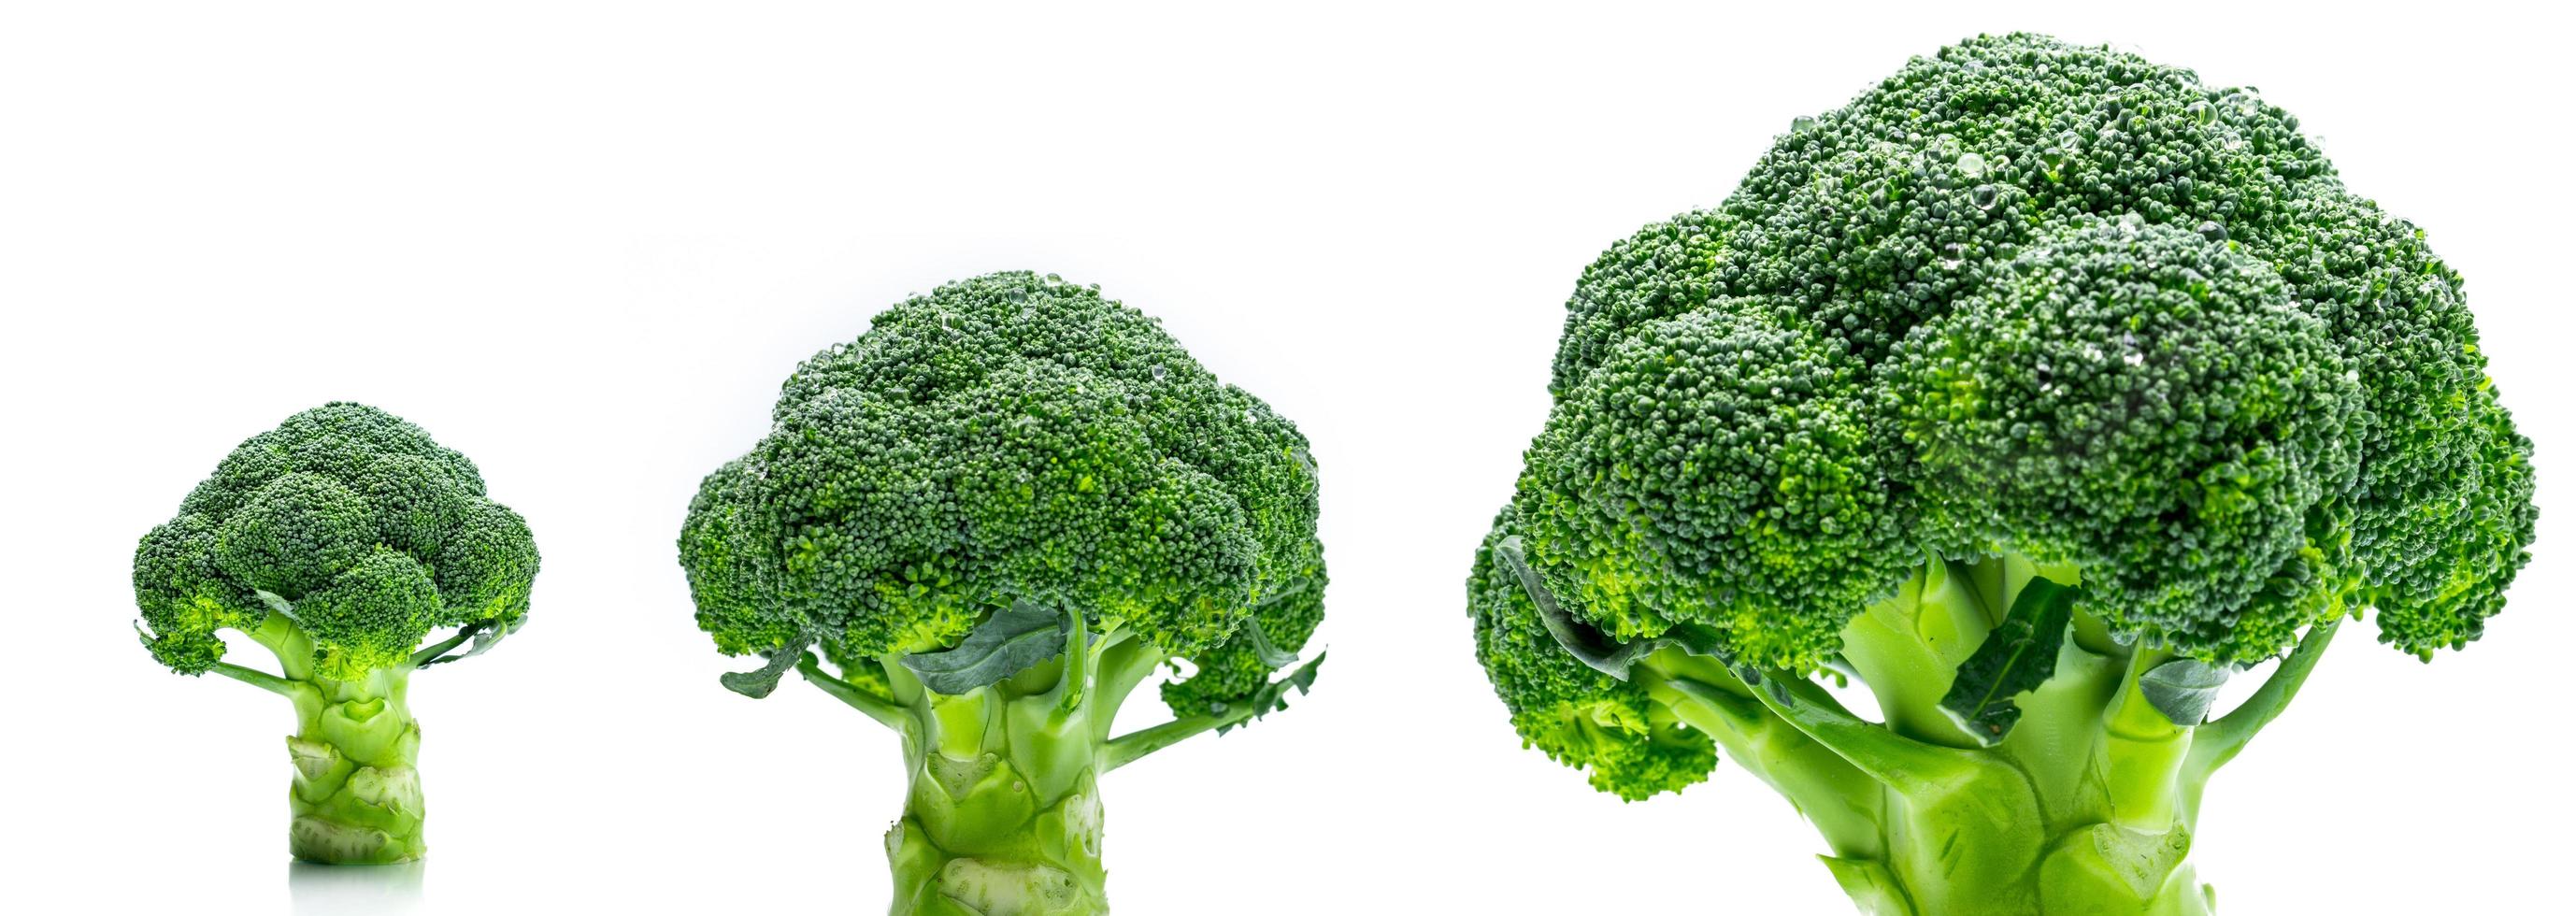 uppsättning grön broccoli brassica oleracea grönsaker naturlig källa till betakaroten, vitamin c, vitamin k, fibermat, folat. färsk broccoli kål isolerad på vit bakgrund. foto